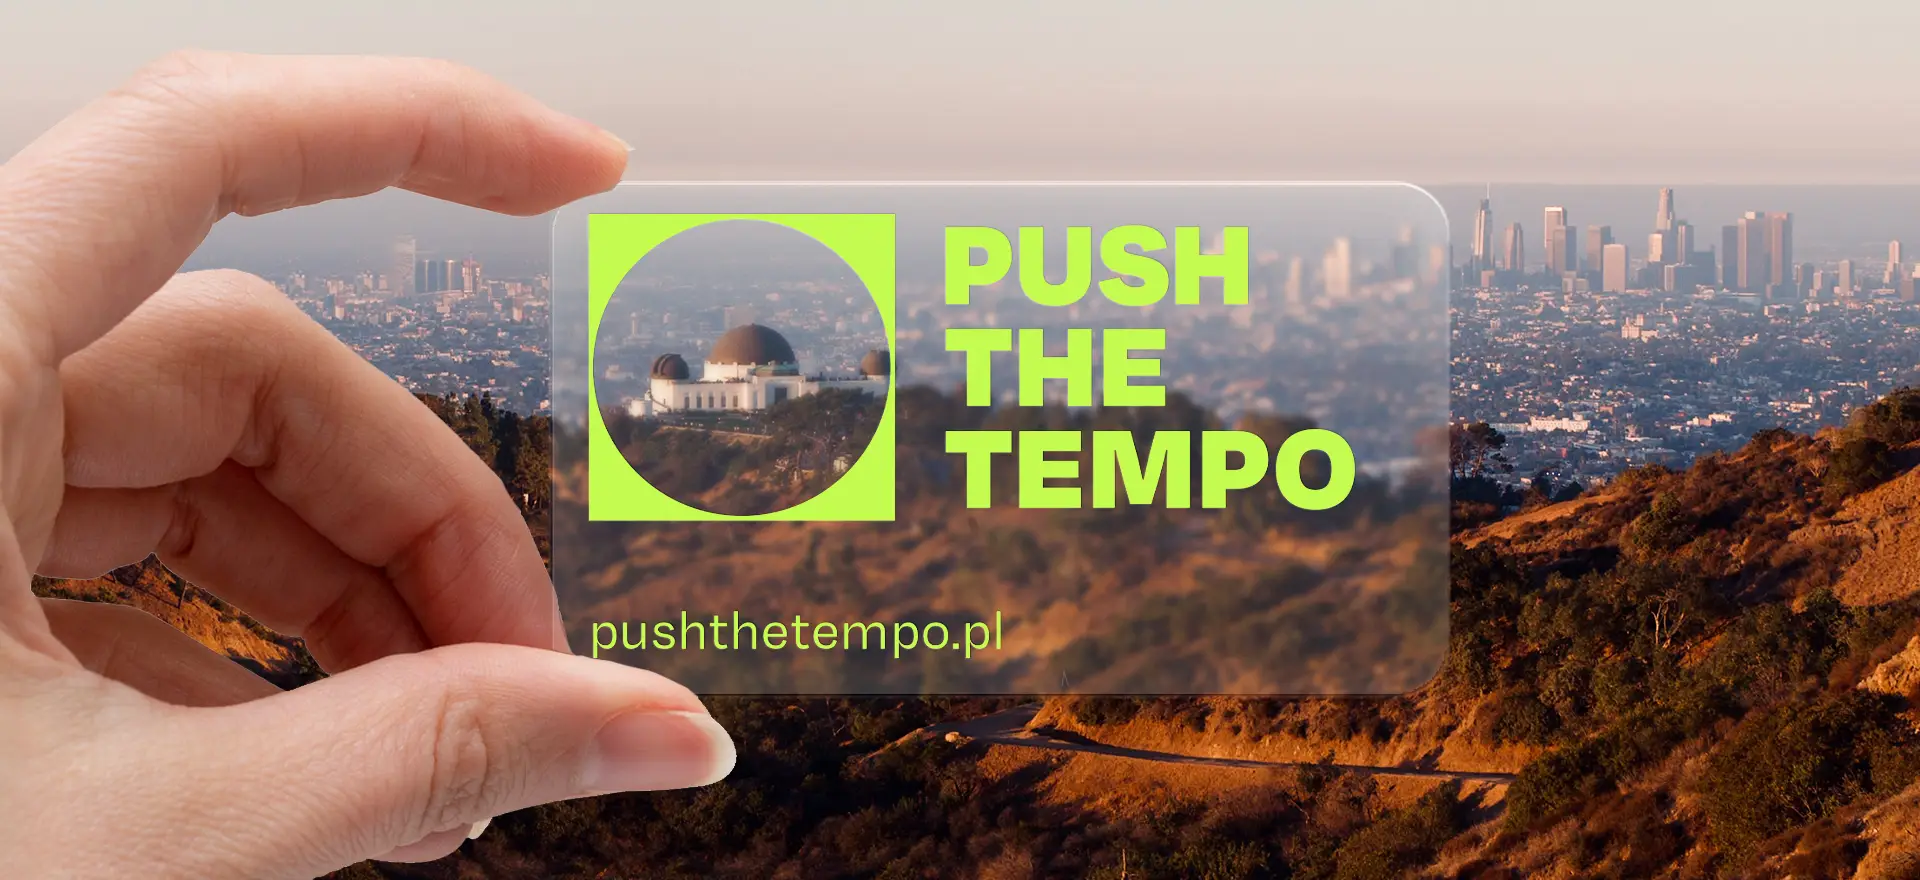 Motyw przewodni marki Push The Tempo wykorzystany na wizytówce